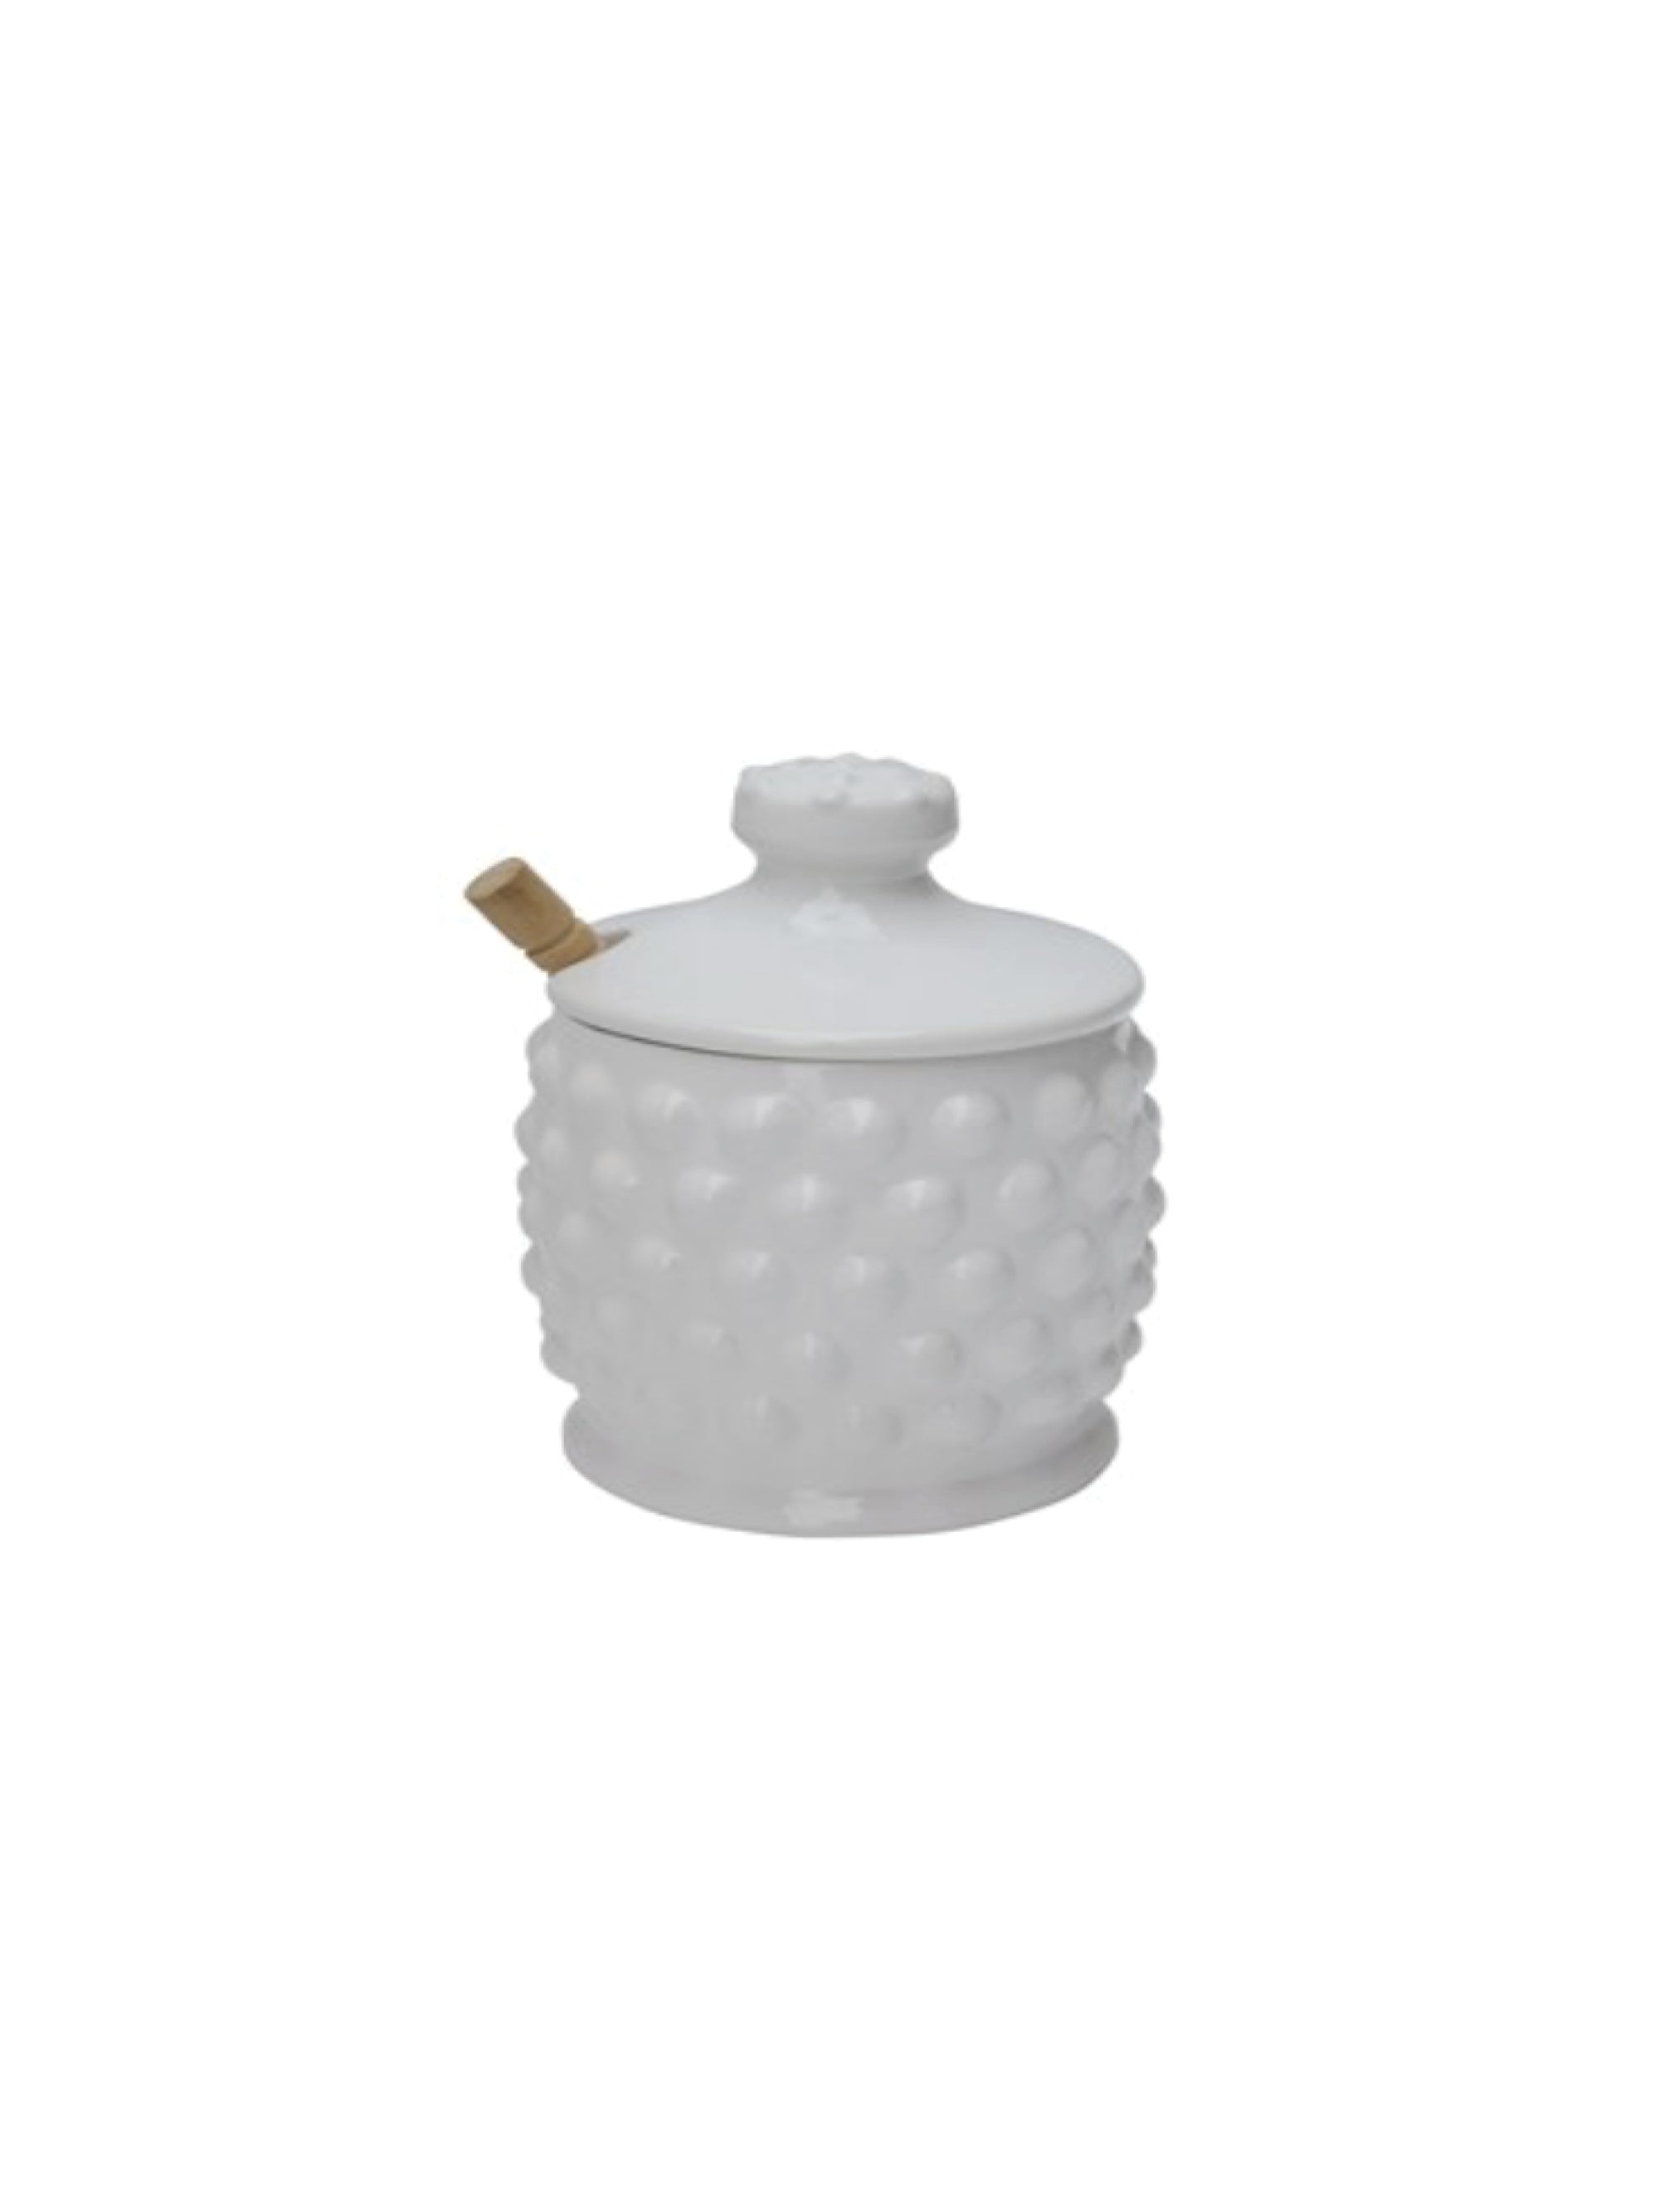 Ceramic Hobnail Honey Jar